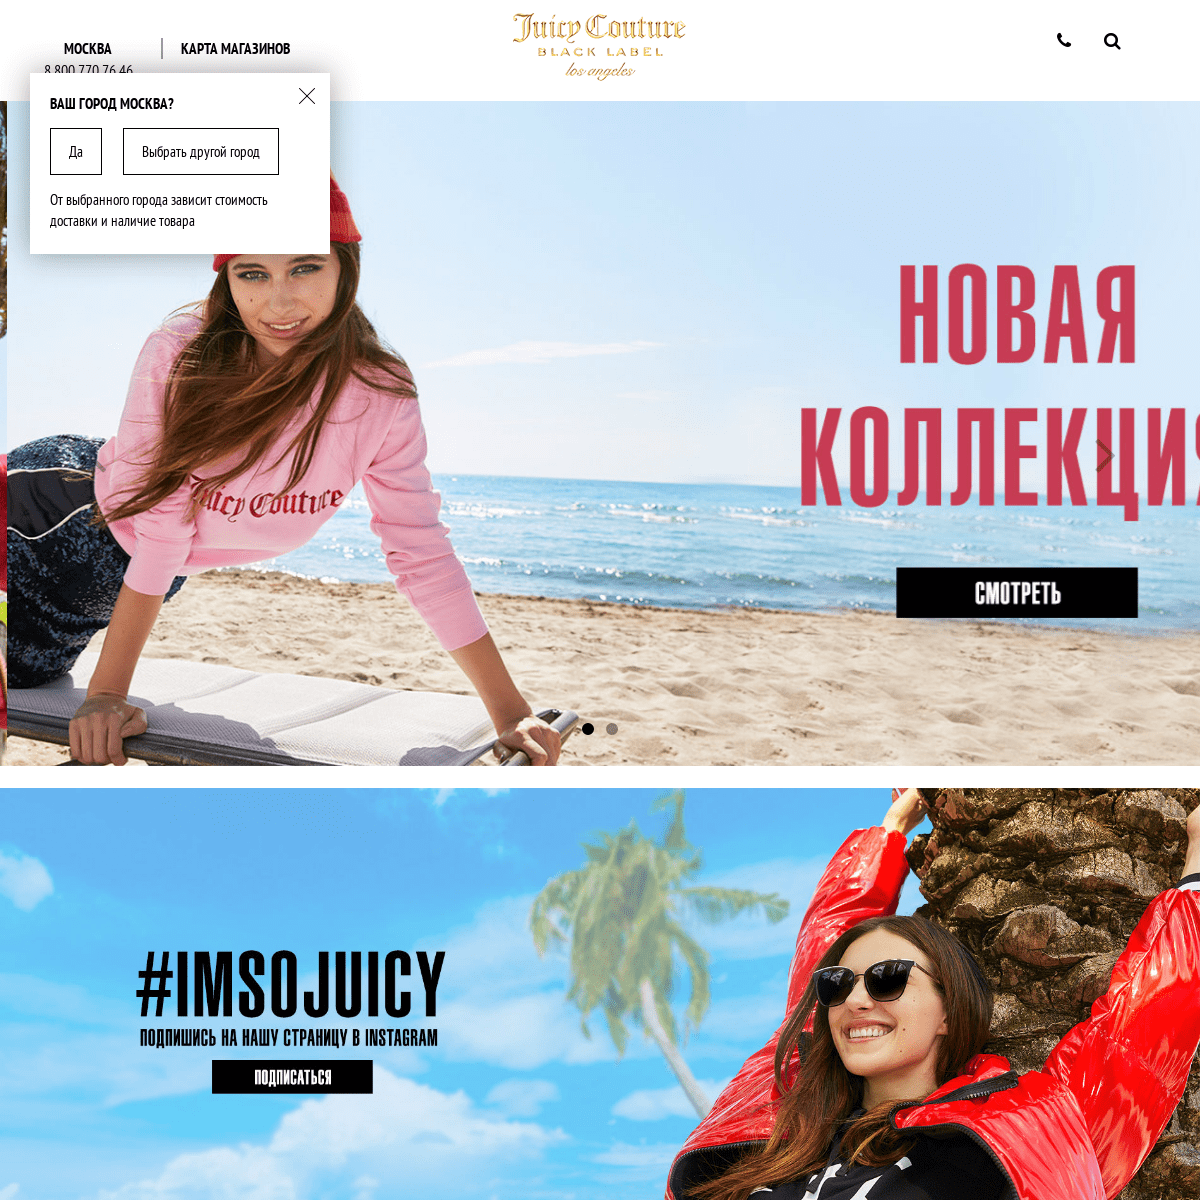 Официальный интернет-магазин Juicy Couture (Джуси Кутюр) в России